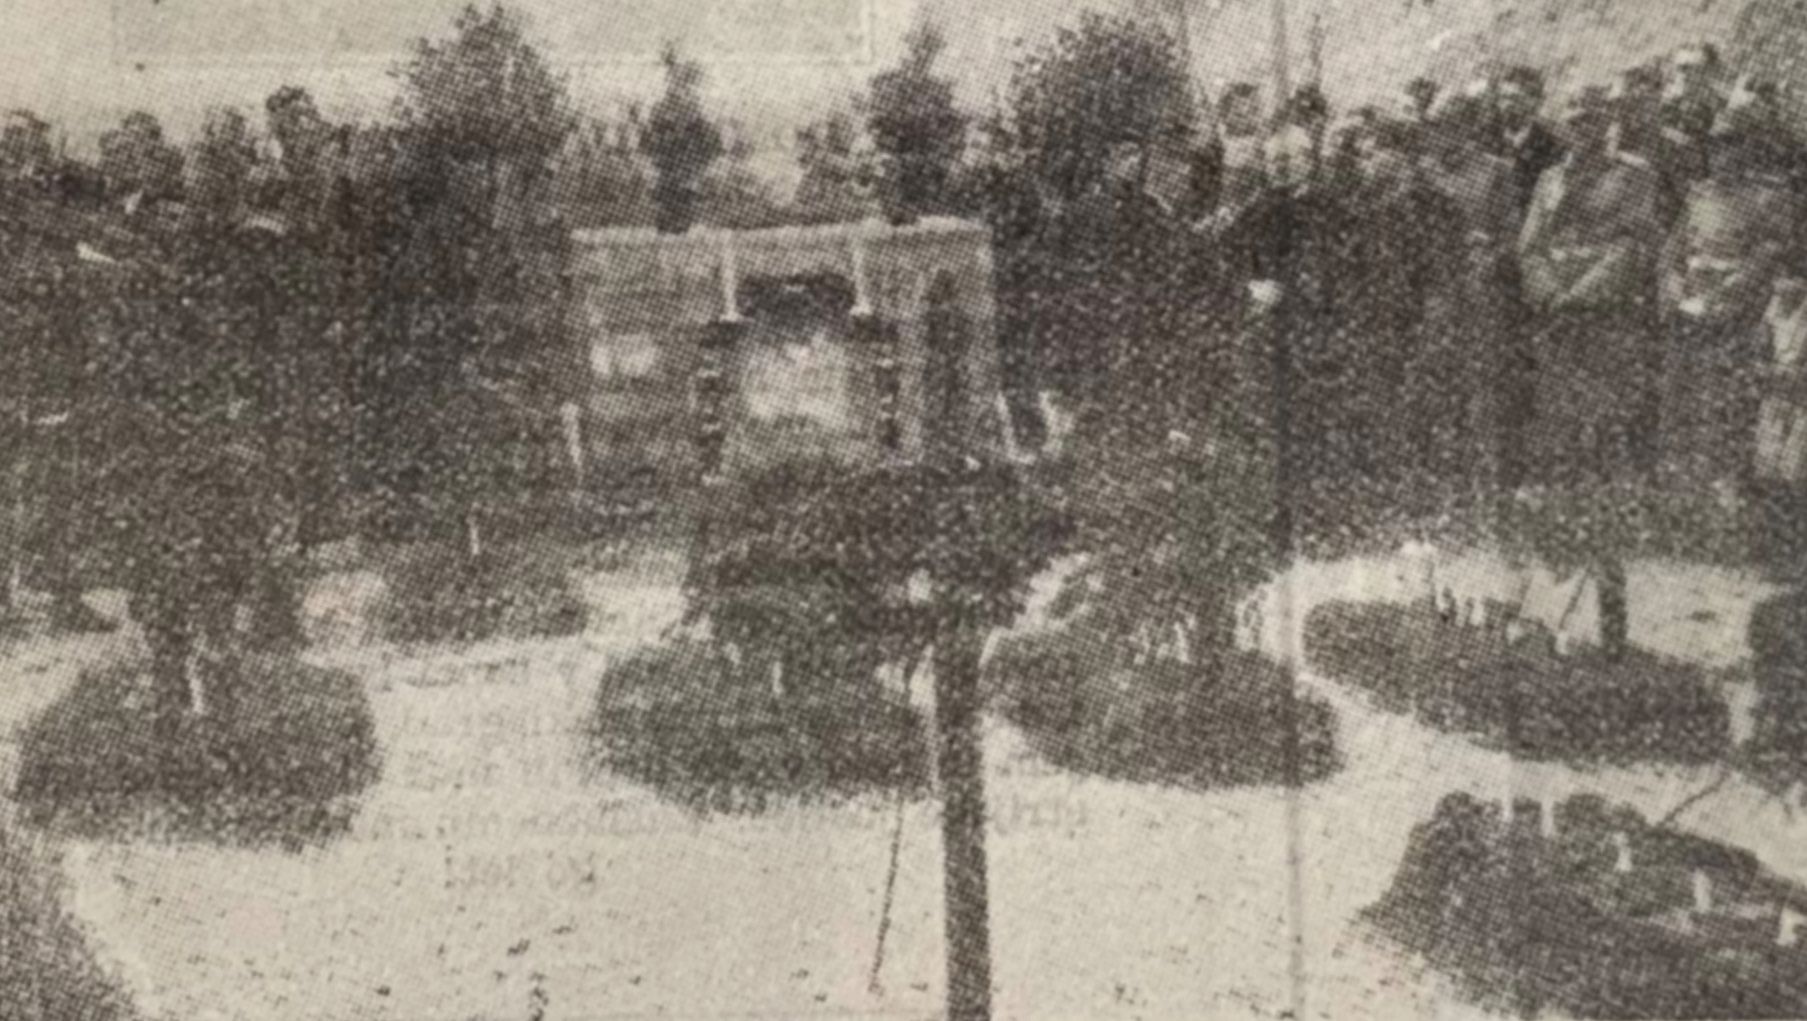 Slika 3: Odkritje spomenika. Vir: Tedenske slike, 30. 5. 1935.